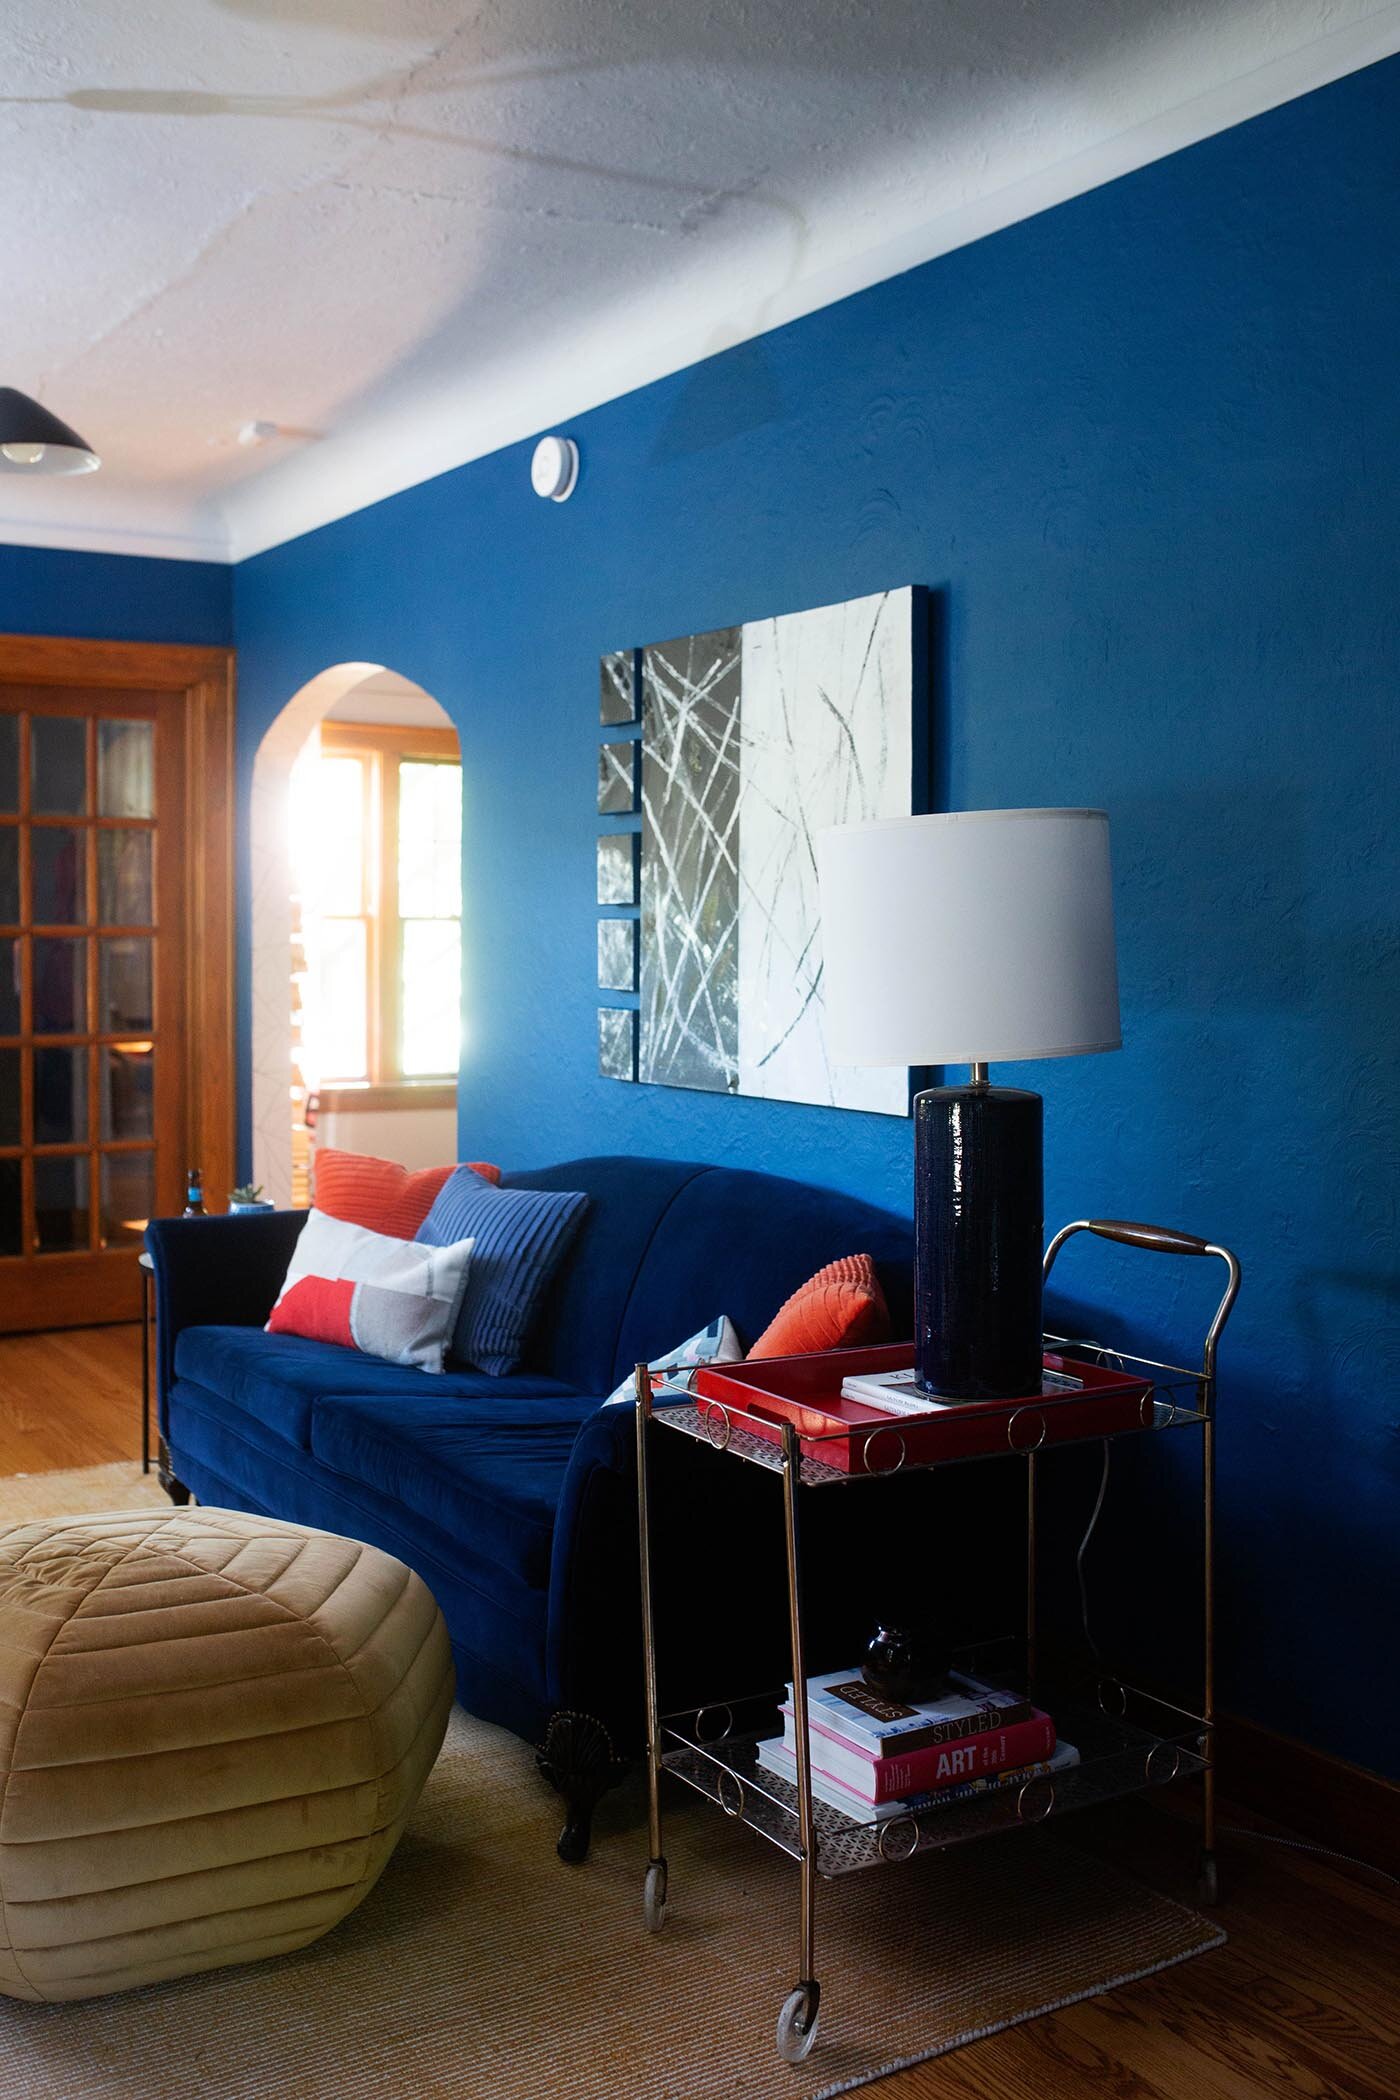 7 Blue velvet couch modern art blue walls regatta sherwin williams bar cart as end table.jpg